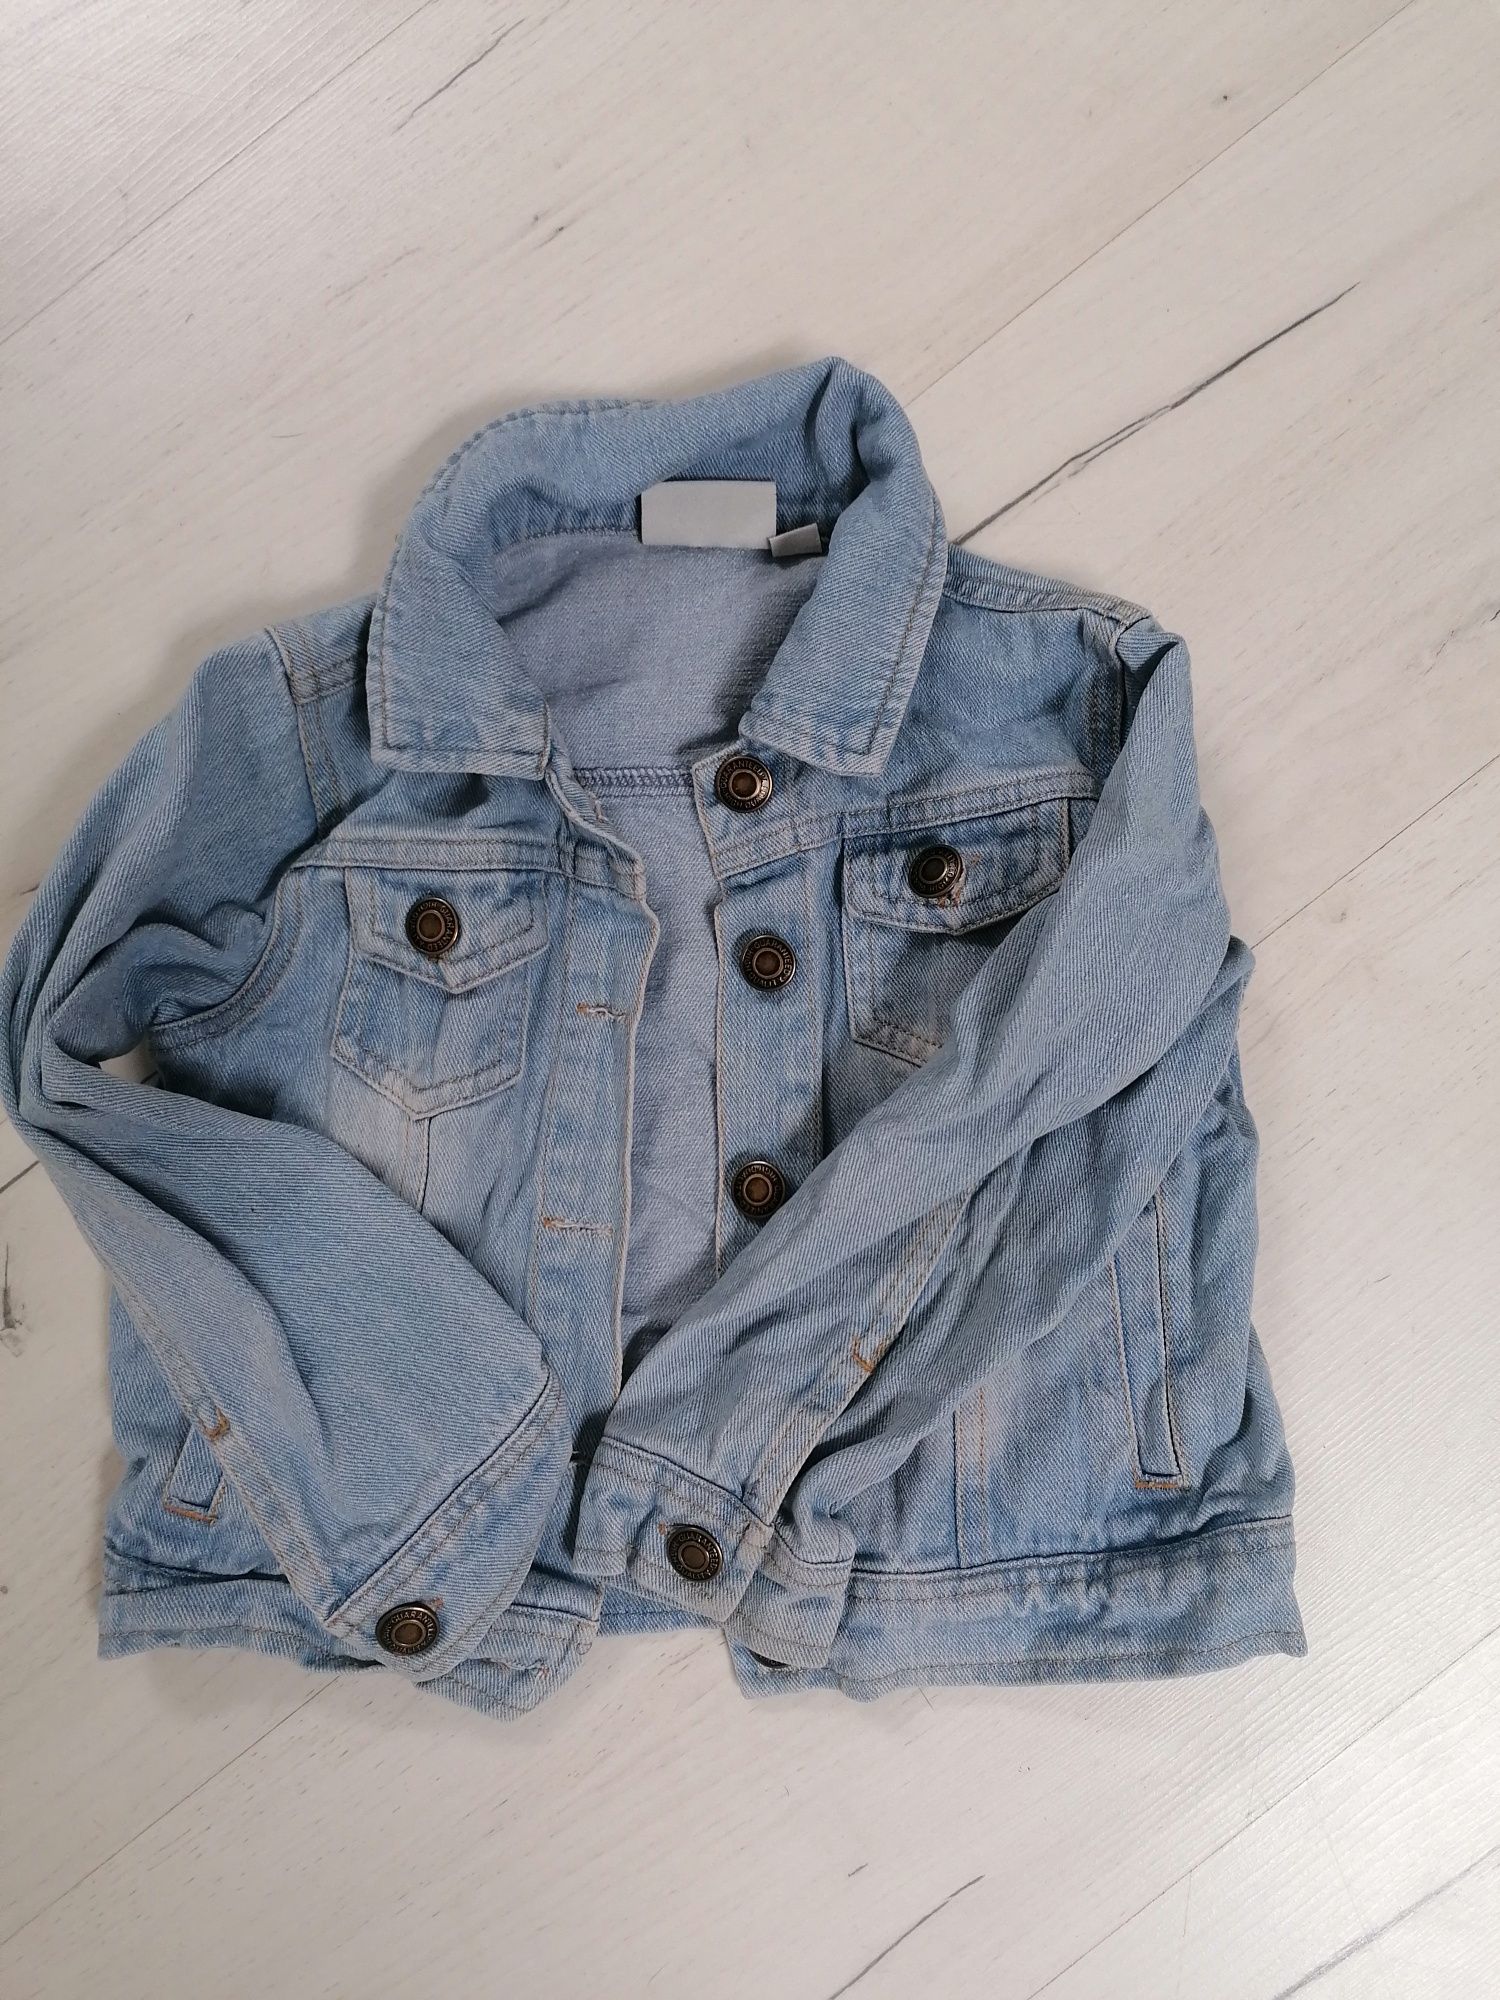 Kurtka jeansowa/katana dla dziewczynki r 98-104